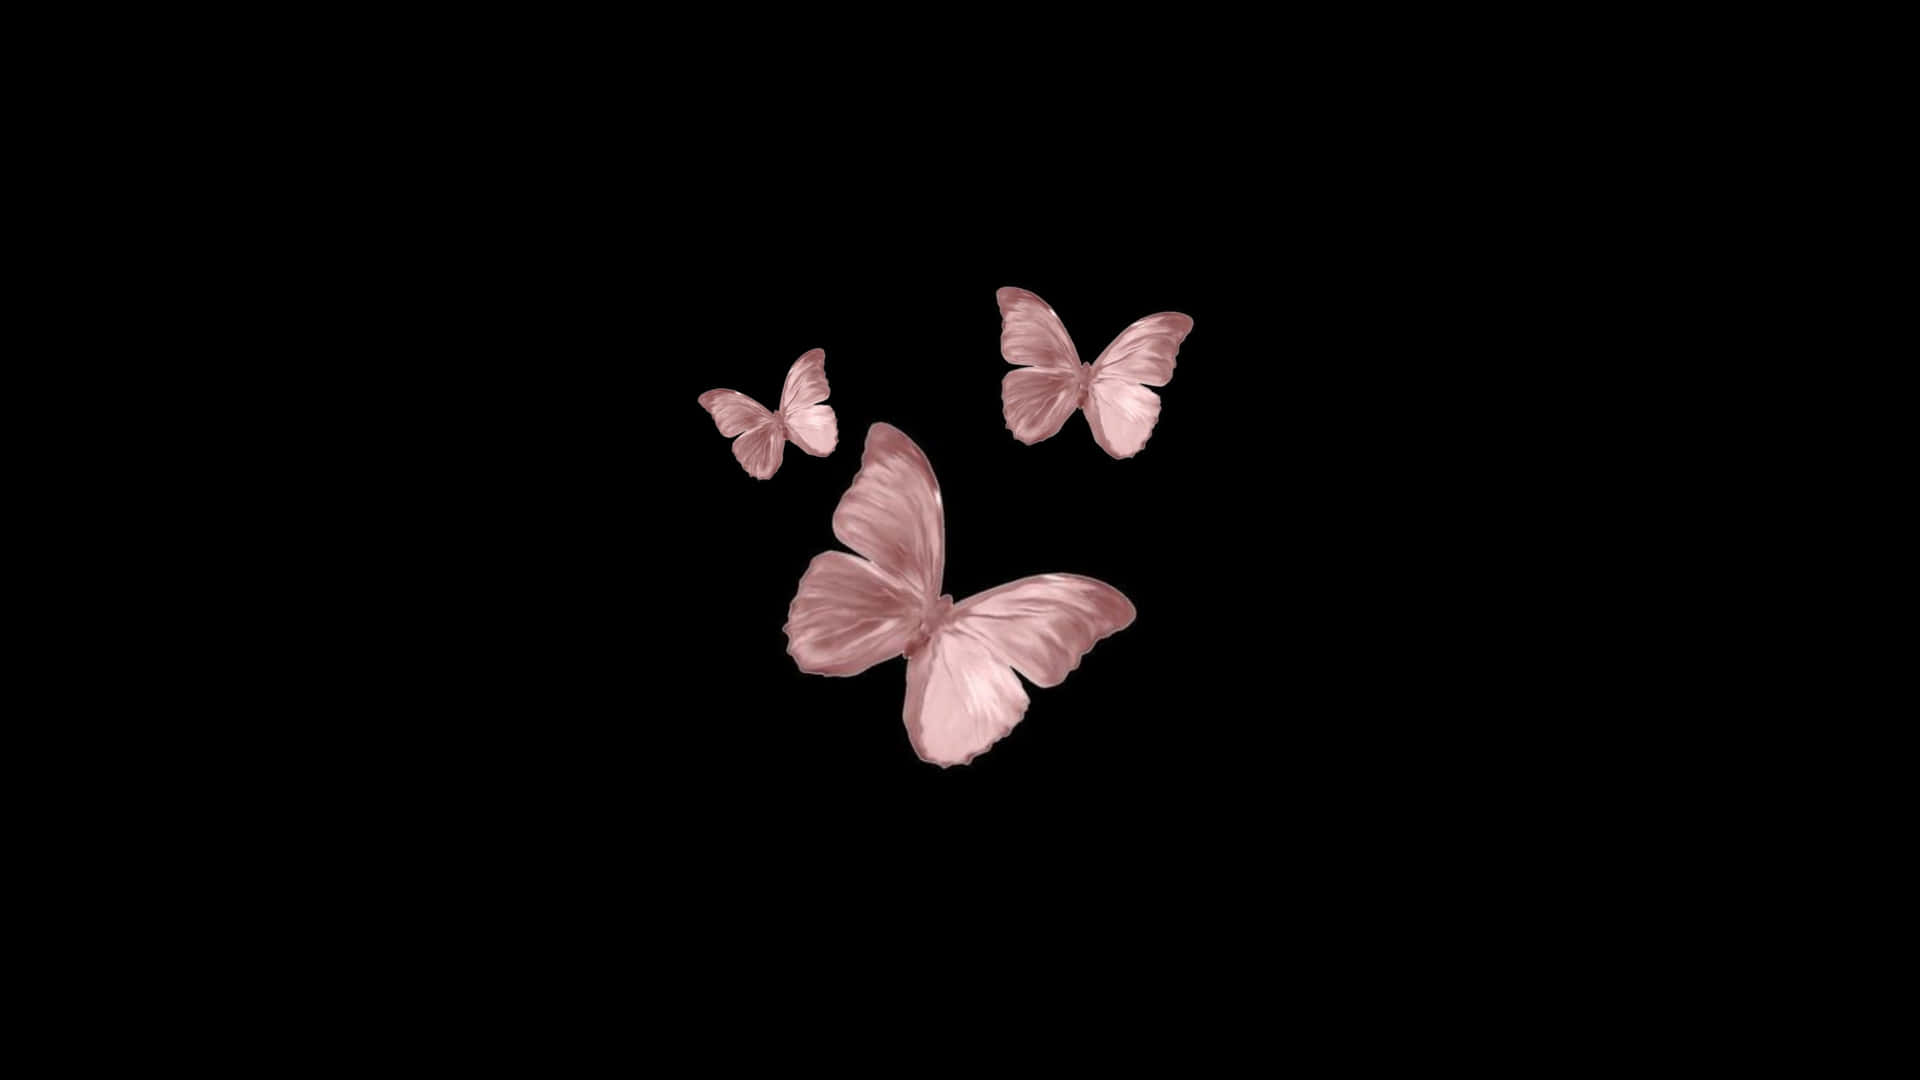 Einschwarzer Hintergrund Mit Pinken Schmetterlingen, Die In Der Luft Fliegen. Wallpaper